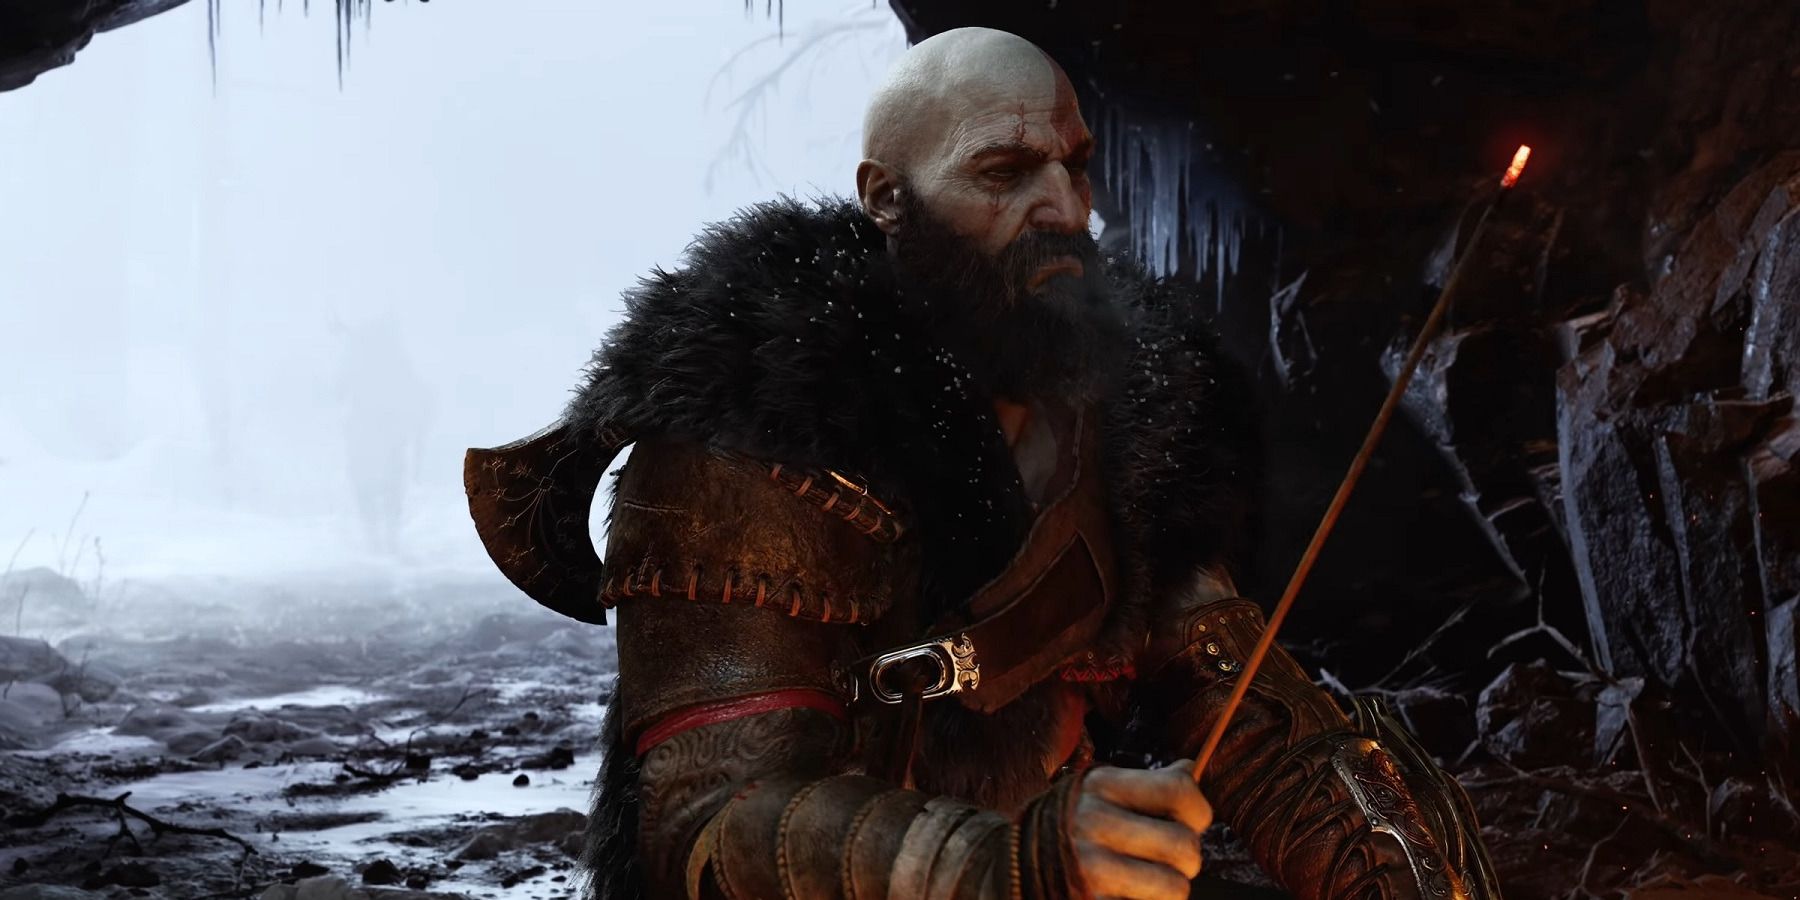 Herec God of War Ragnarok Kratos říká, že chirurgie způsobila zpoždění hry